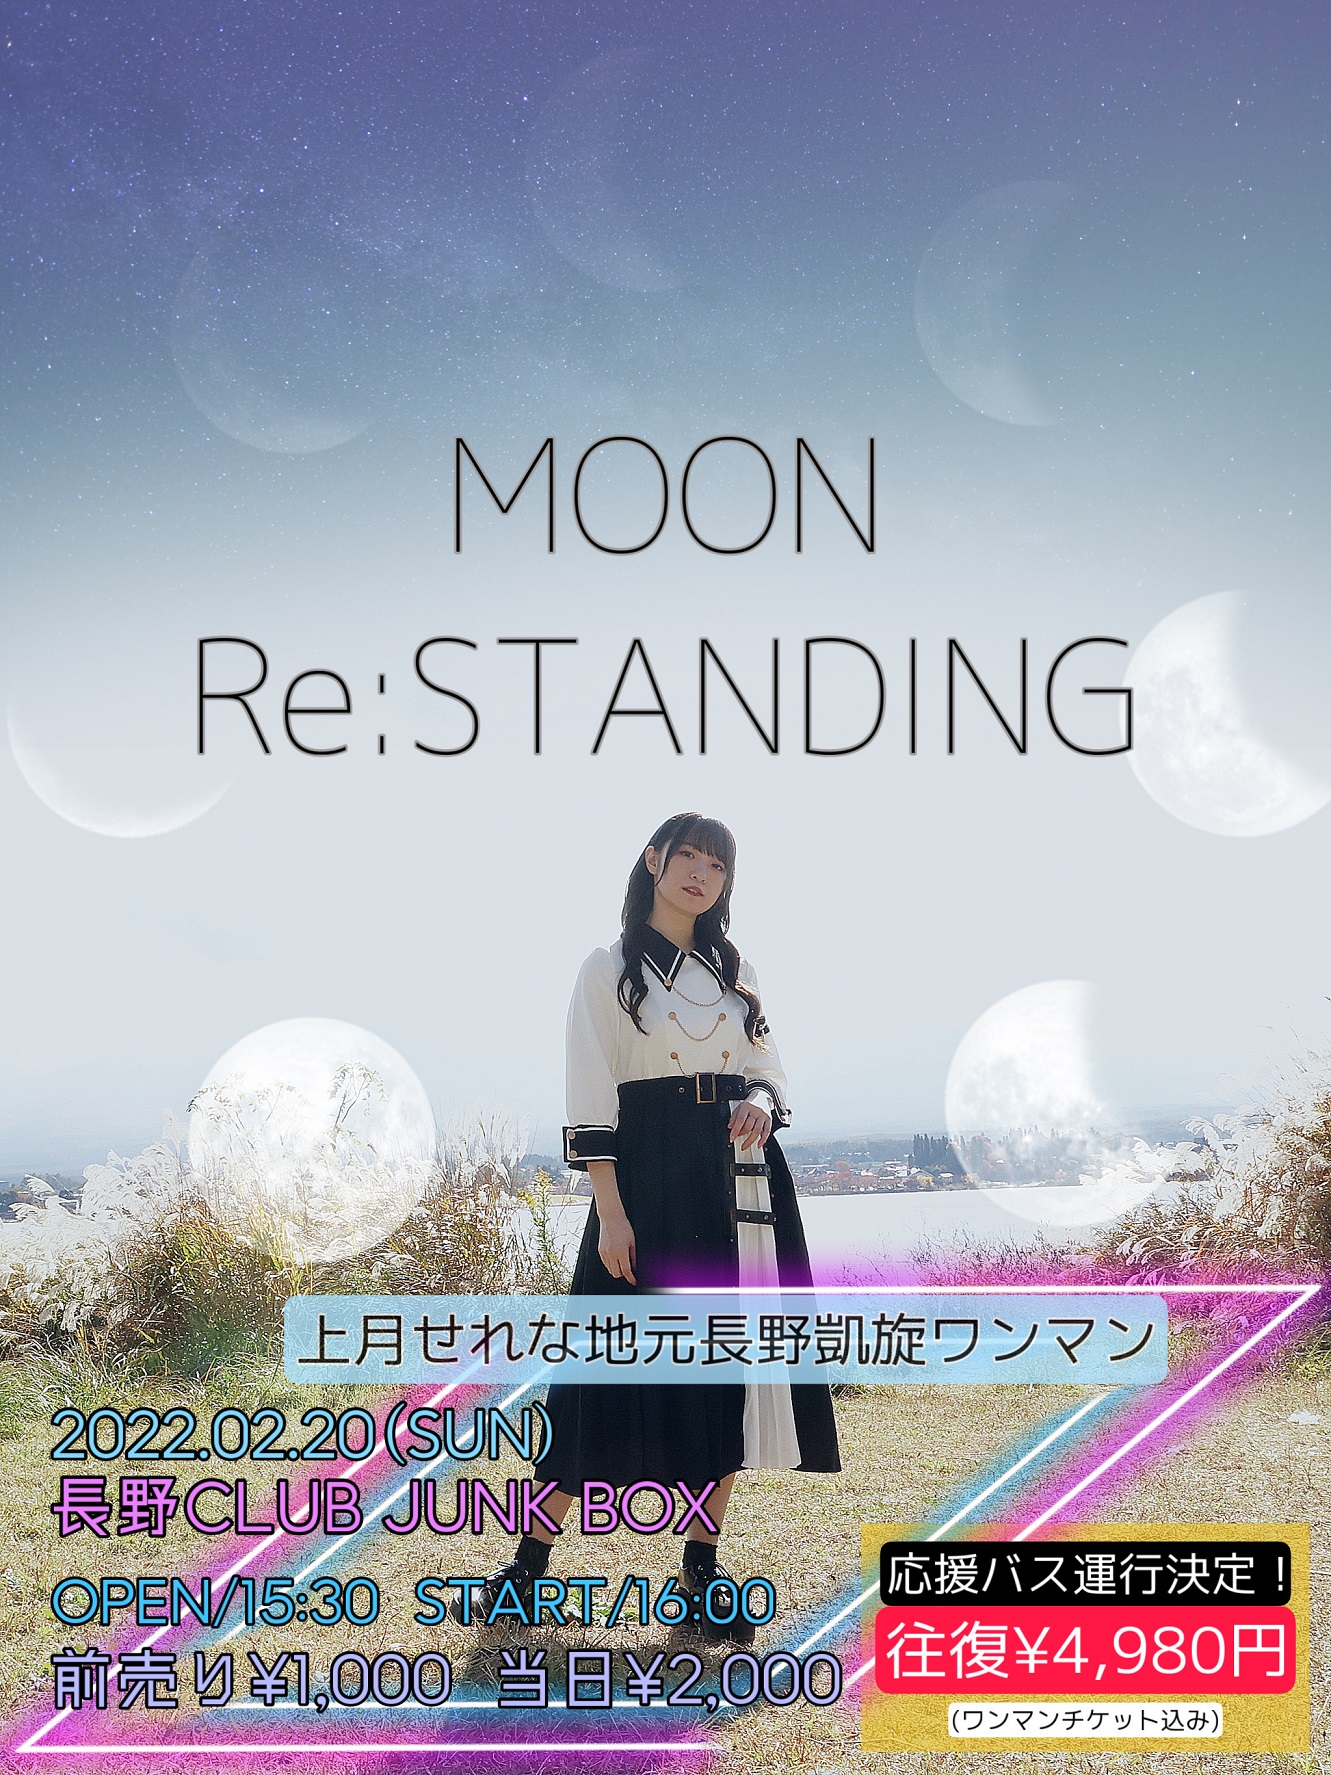 上月せれな地元凱旋ワンマンライブ『MOON Re:STANDING』